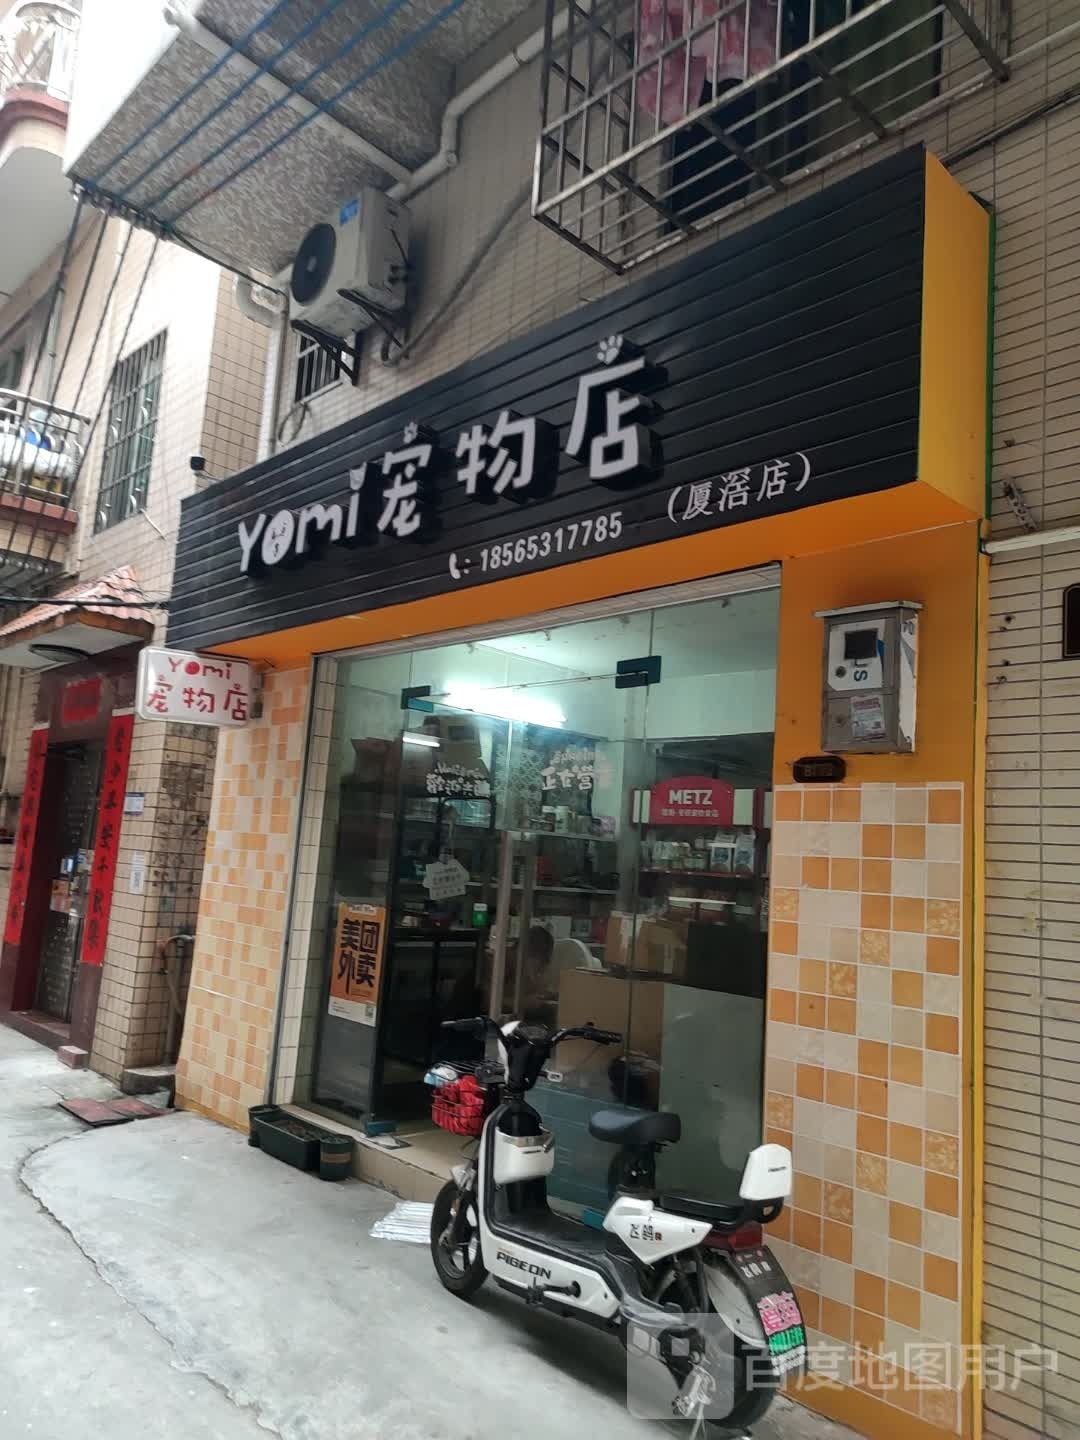 yomi宠物店(厦滘店)